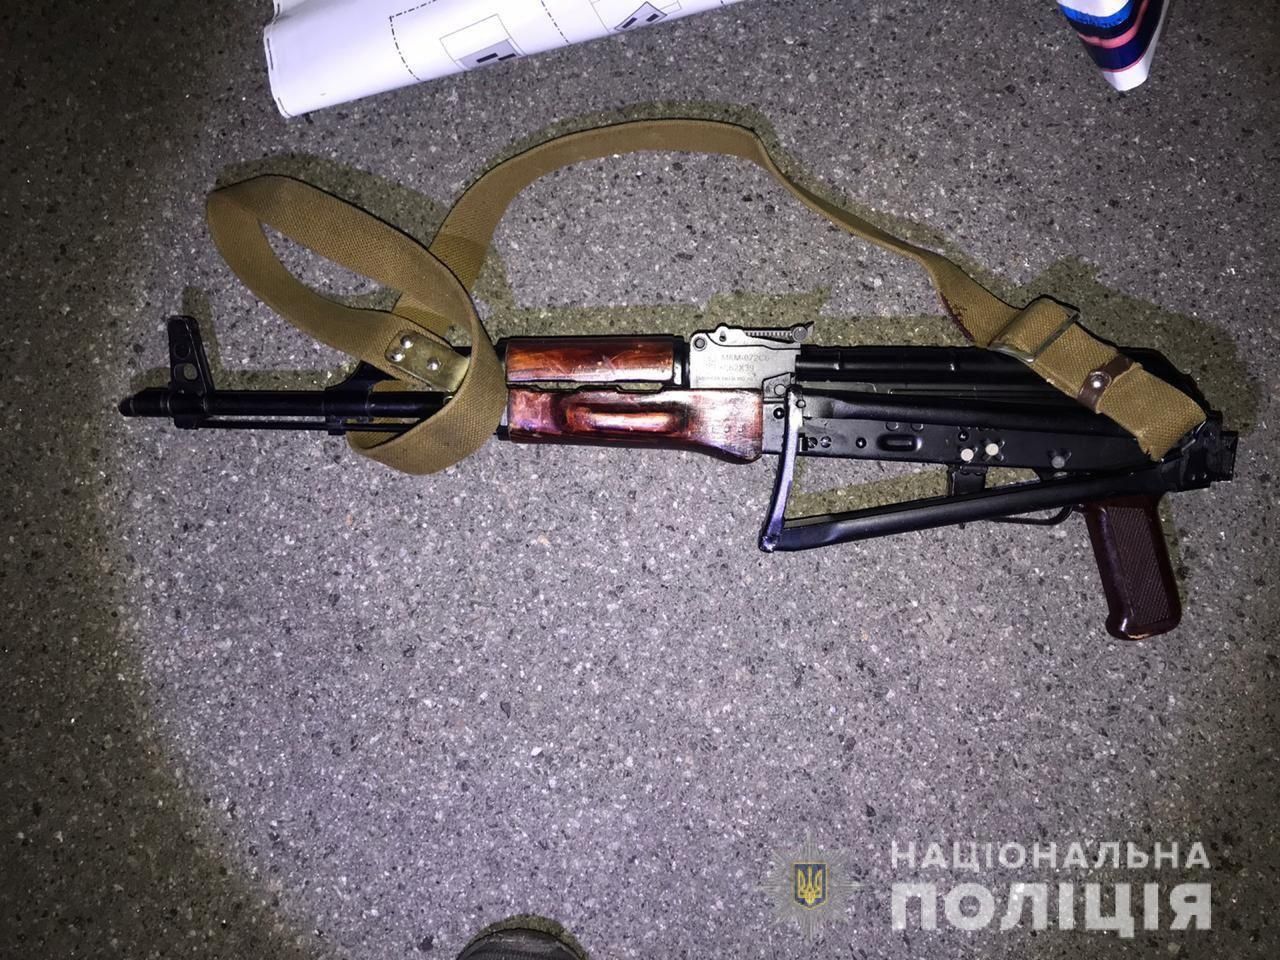 Нападение на айдаровца в Вышгороде 23.05.2020: нападающих задержали